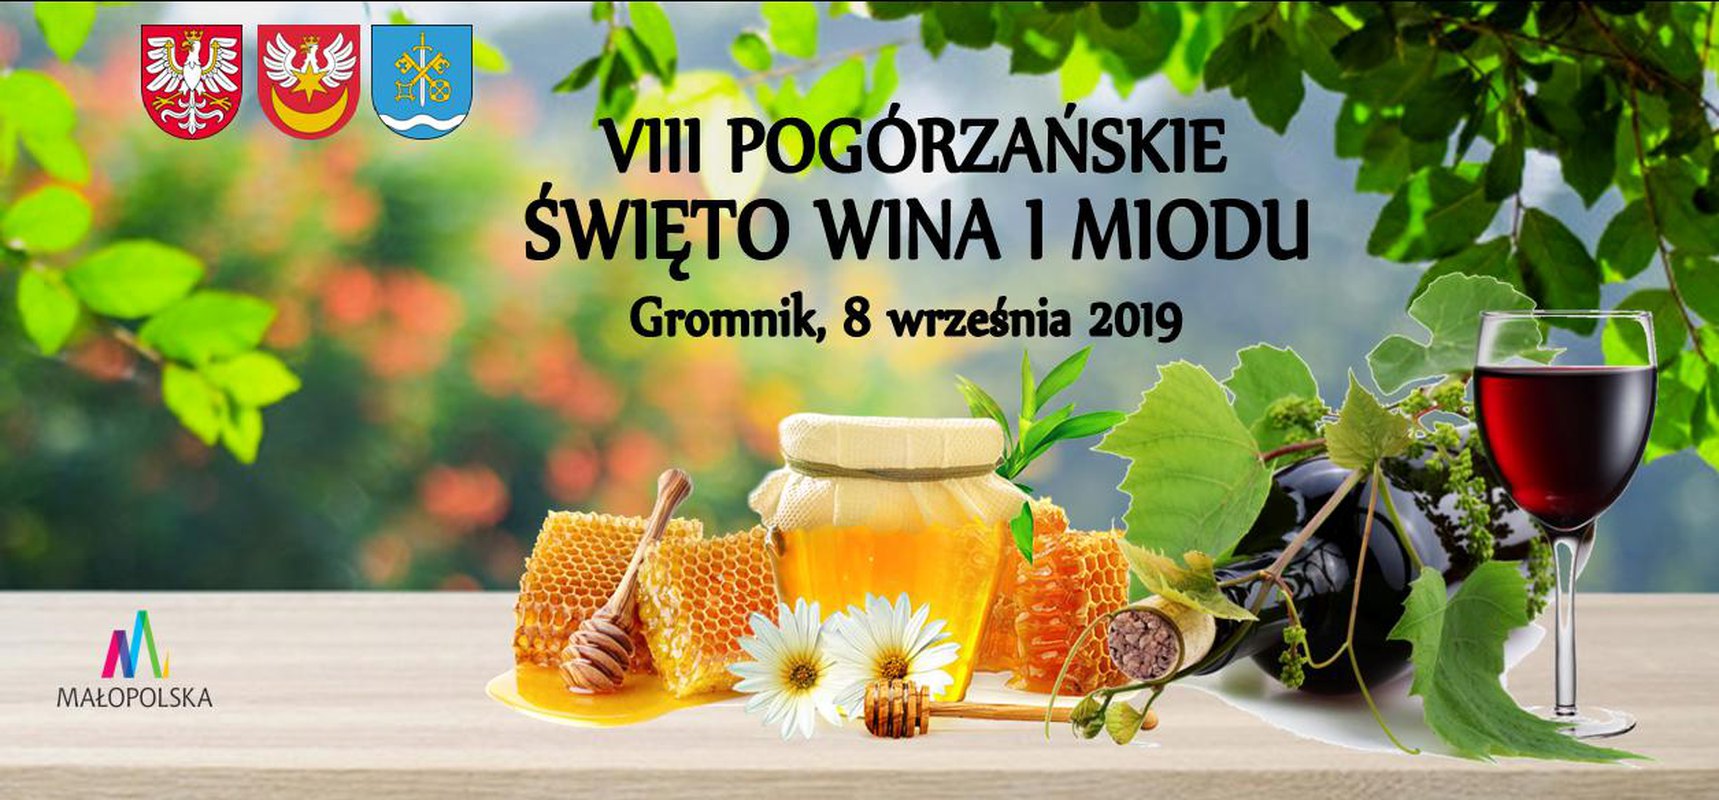 VIII Pogórzańskie Święto Wina i Miodu - Gromnik 2019